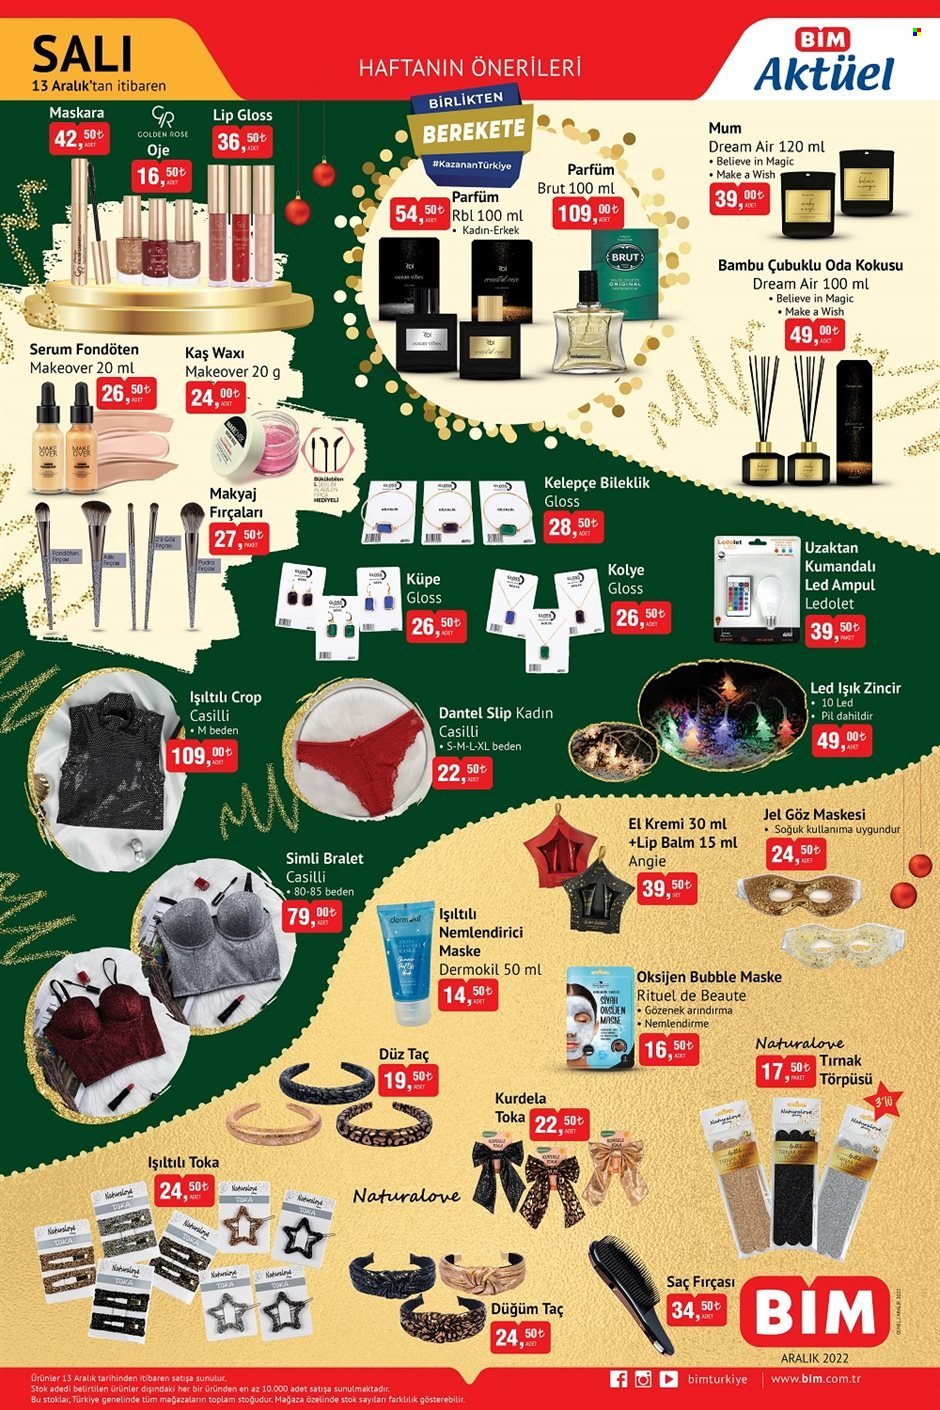 thumbnail - BİM aktüel ürünler, broşür  - 12.13.2022 - 12.26.2022 - Satıştaki ürünler - serum, nemlendirici, kremi, saç fırçası, parfüm, Brut. Sayfa 3.